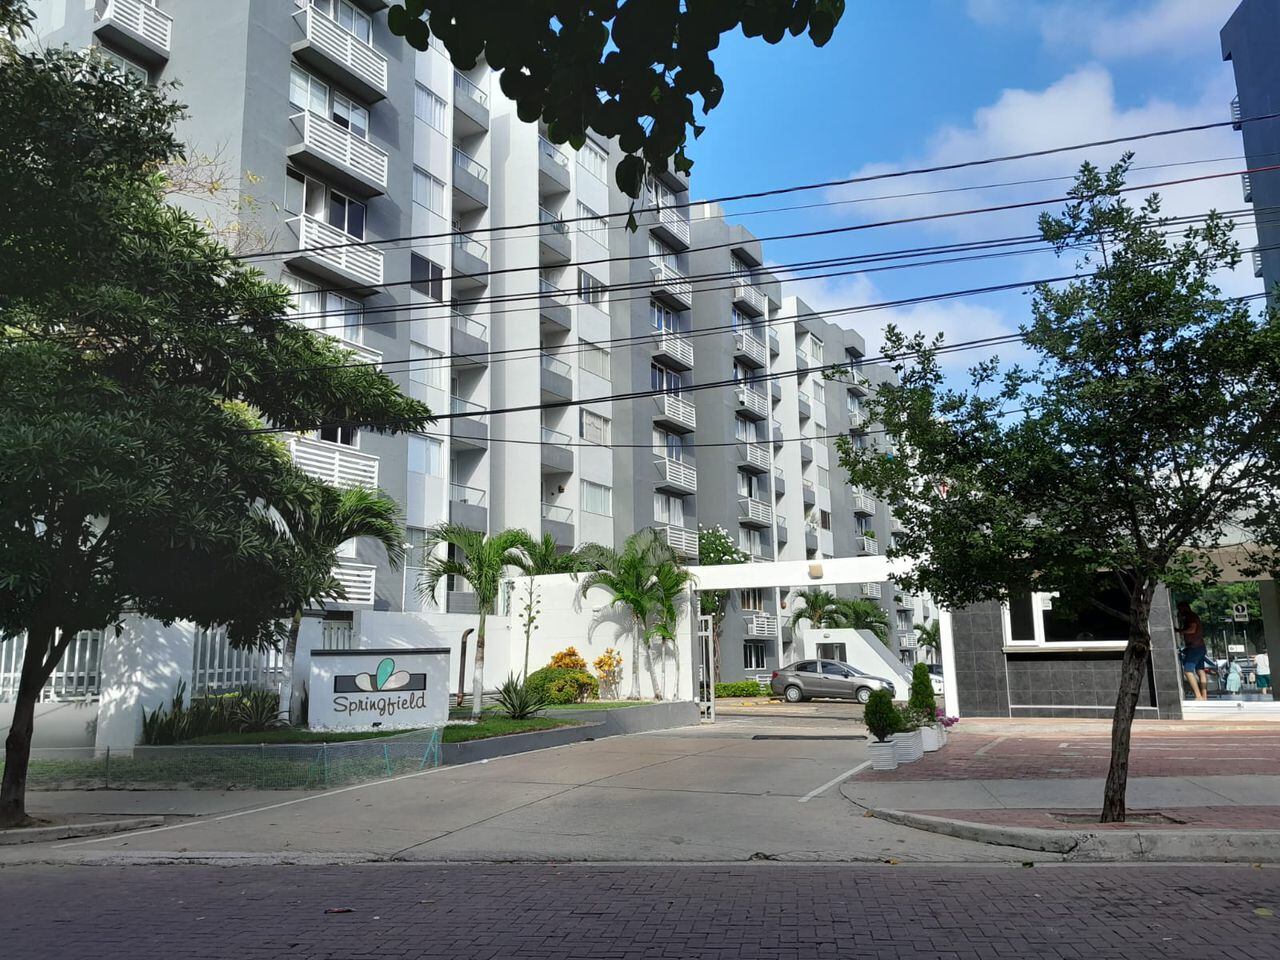 Los propietarios de nueve apartamentos estarían implicados en el robo de energía en Barranquilla, según Air - e.